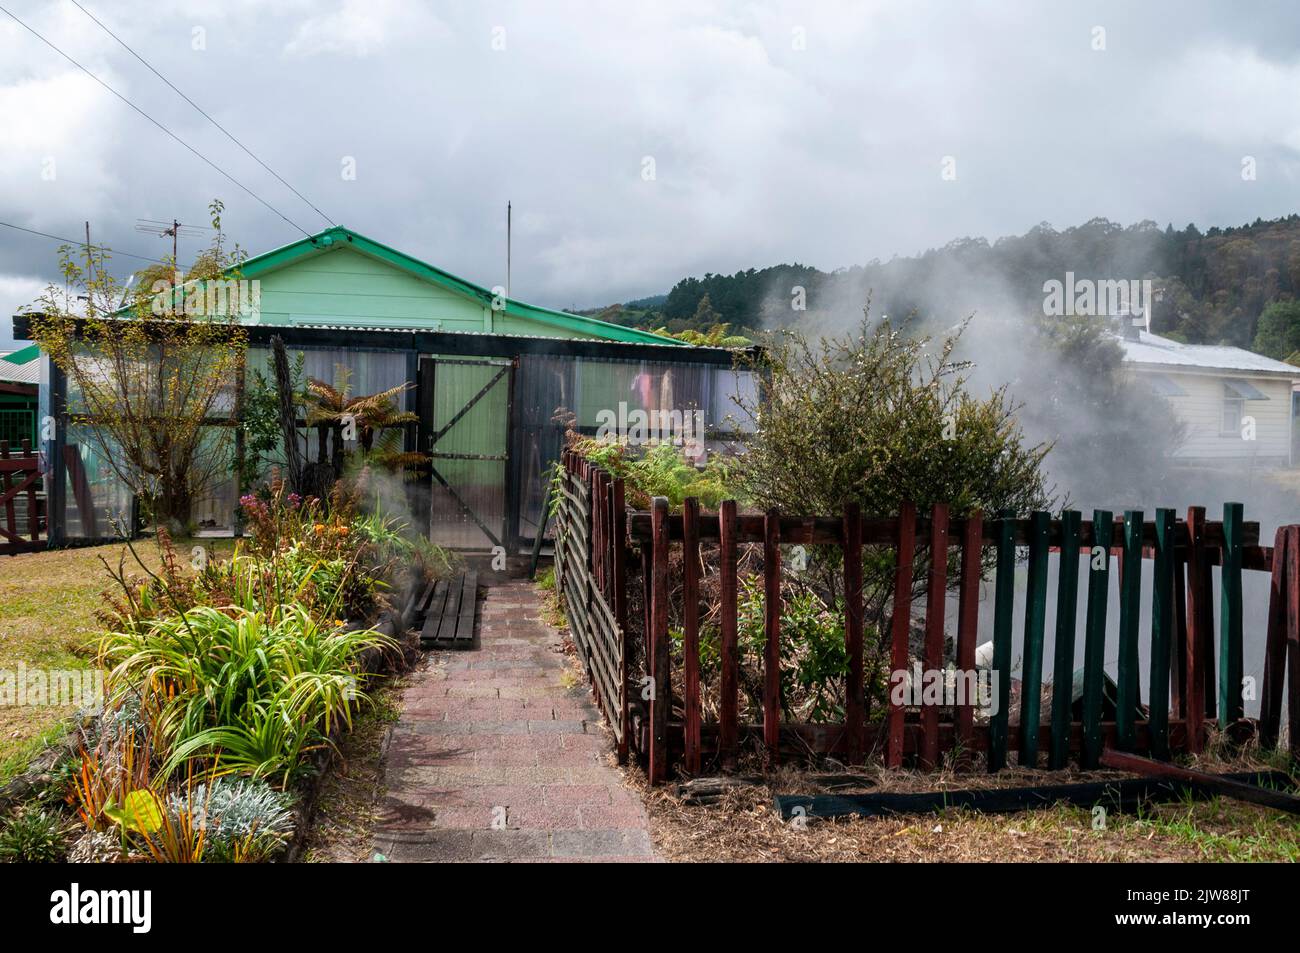 Dampf steigt aus einer heißen Quelle in einem kleinen Garten vor einem Maori-Haus im einzigen lebenden Maori-Dorf Neuseelands, Whakarewarewa, das innerhalb von Th liegt Stockfoto